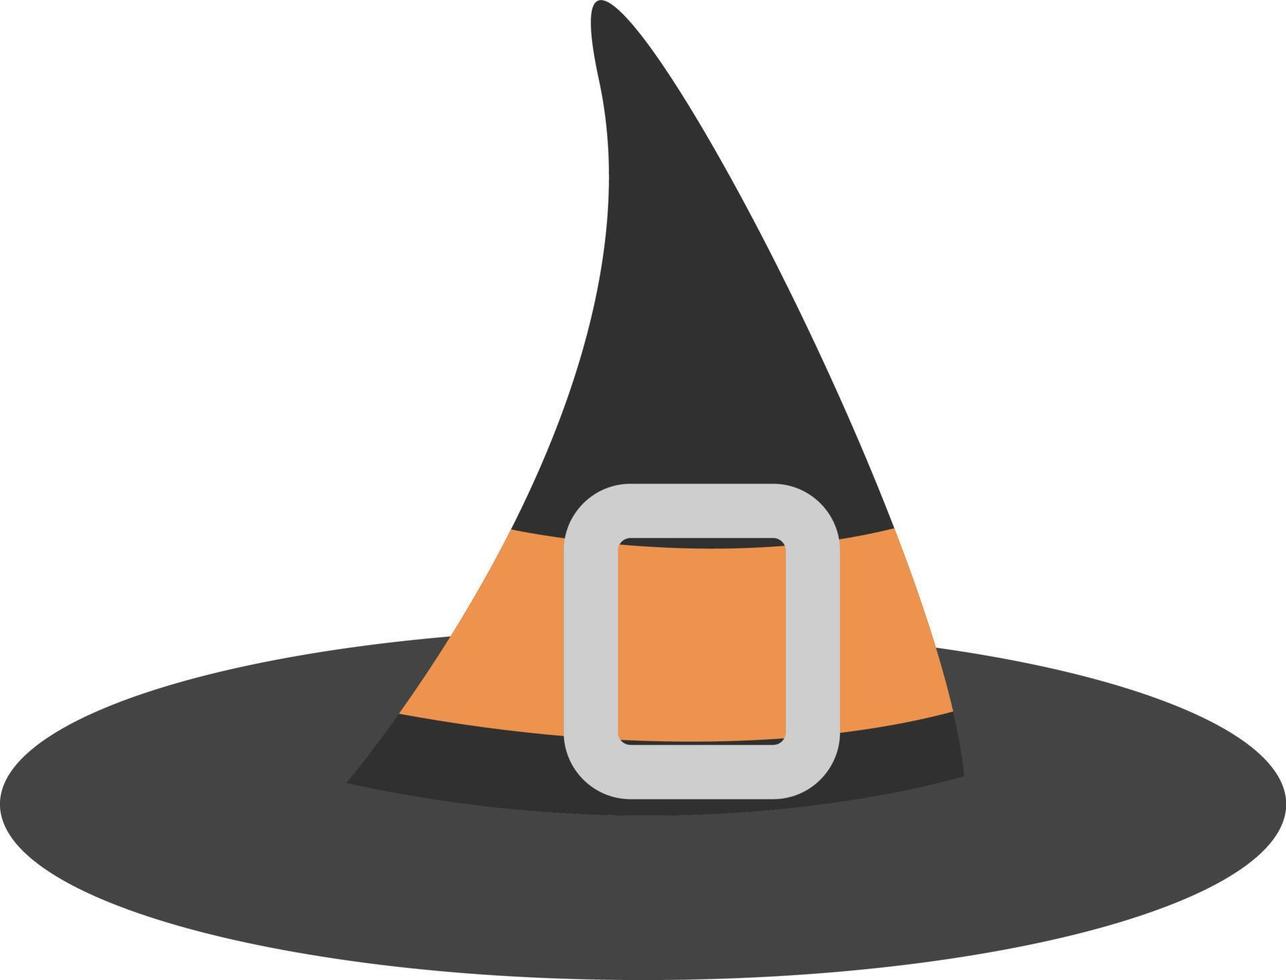 chapéu de bruxa preta, ilustração, vetor em um fundo branco.